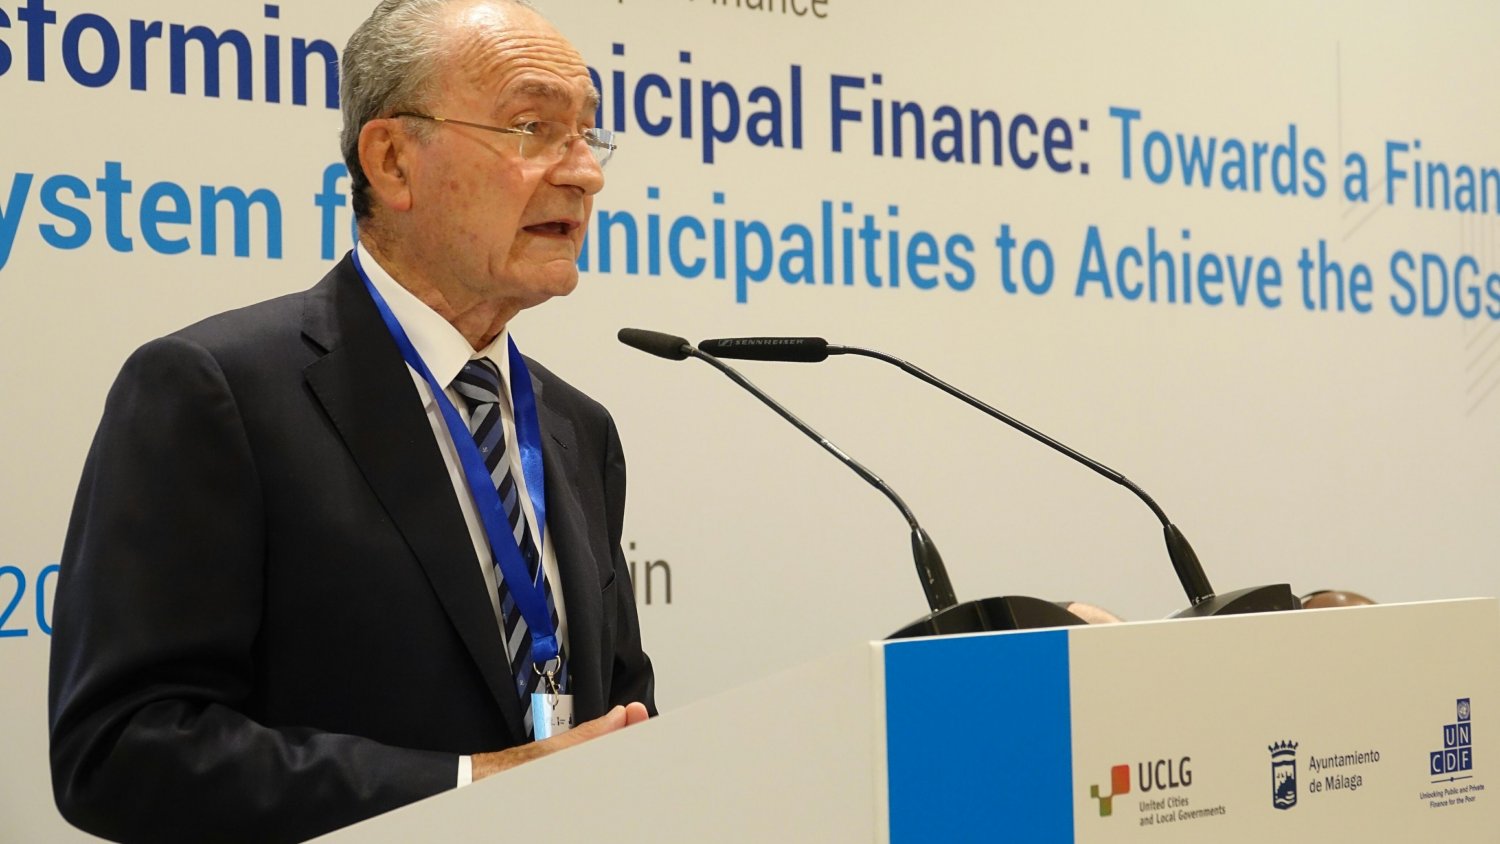 El Fondo de Desarrollo de la ONU para la capitalización celebra en Málaga su cumbre de alto nivel sobre finanzas municipales